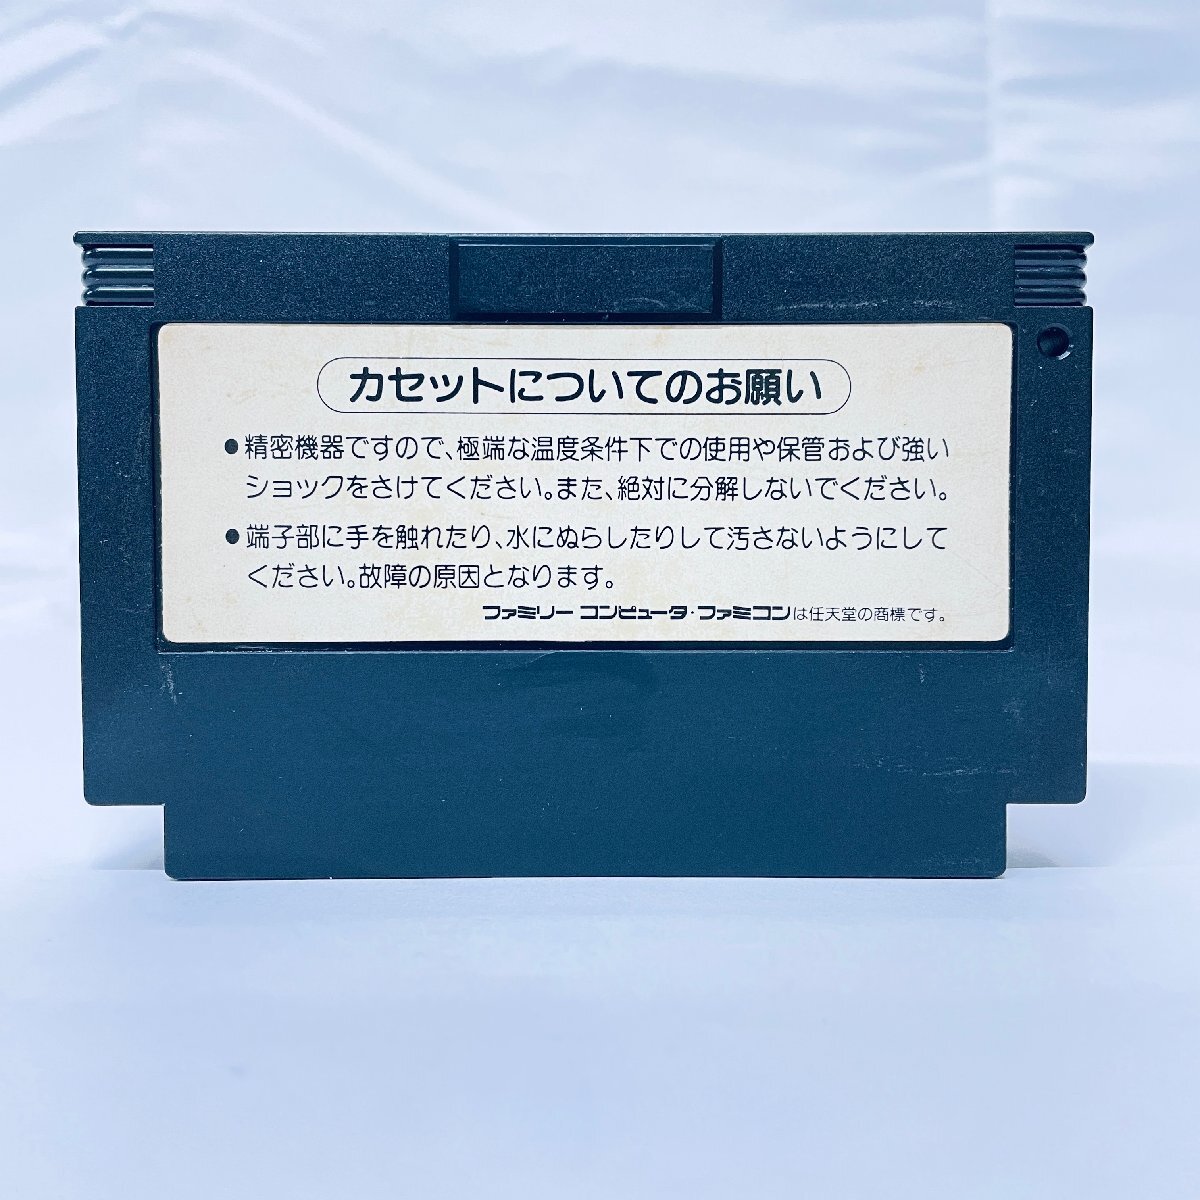 1 иен ~ FC Famicom soft klaisis сила soft только пуск проверка settled 